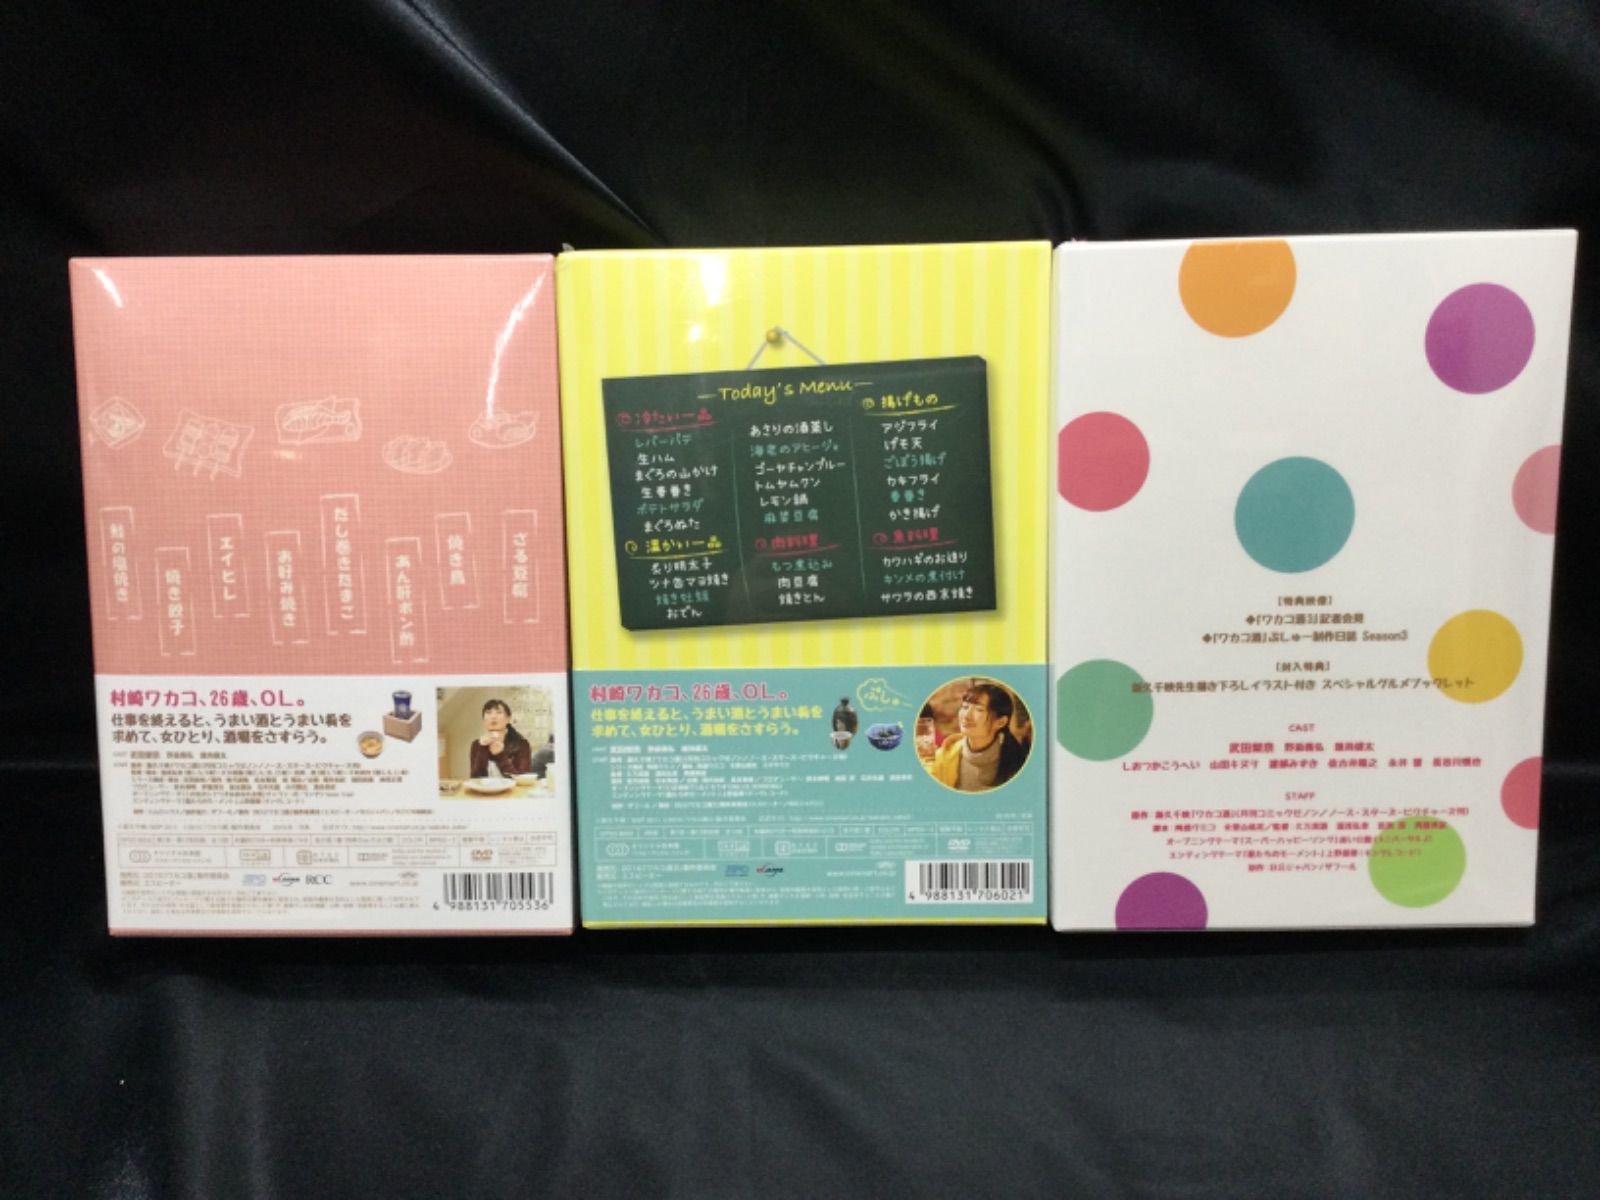 ☆ワカコ酒 DVD BOX 1,2,3 - ののくる - メルカリ